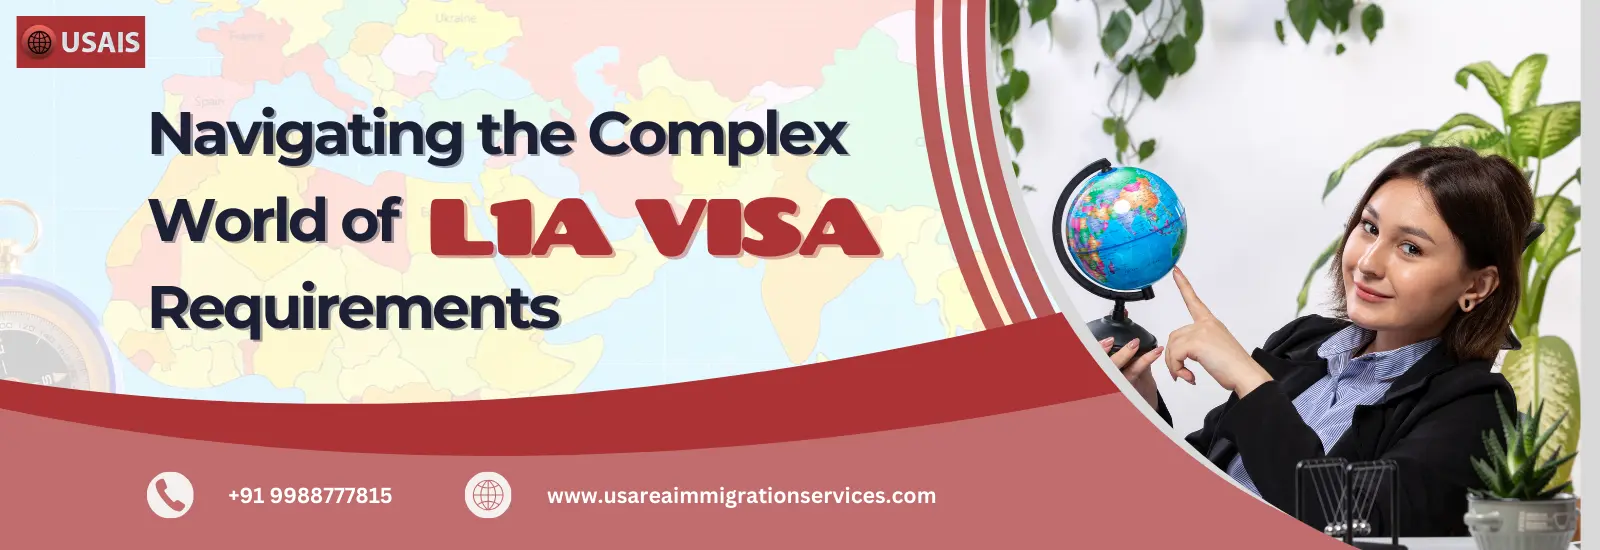 L1A-visa-requirments